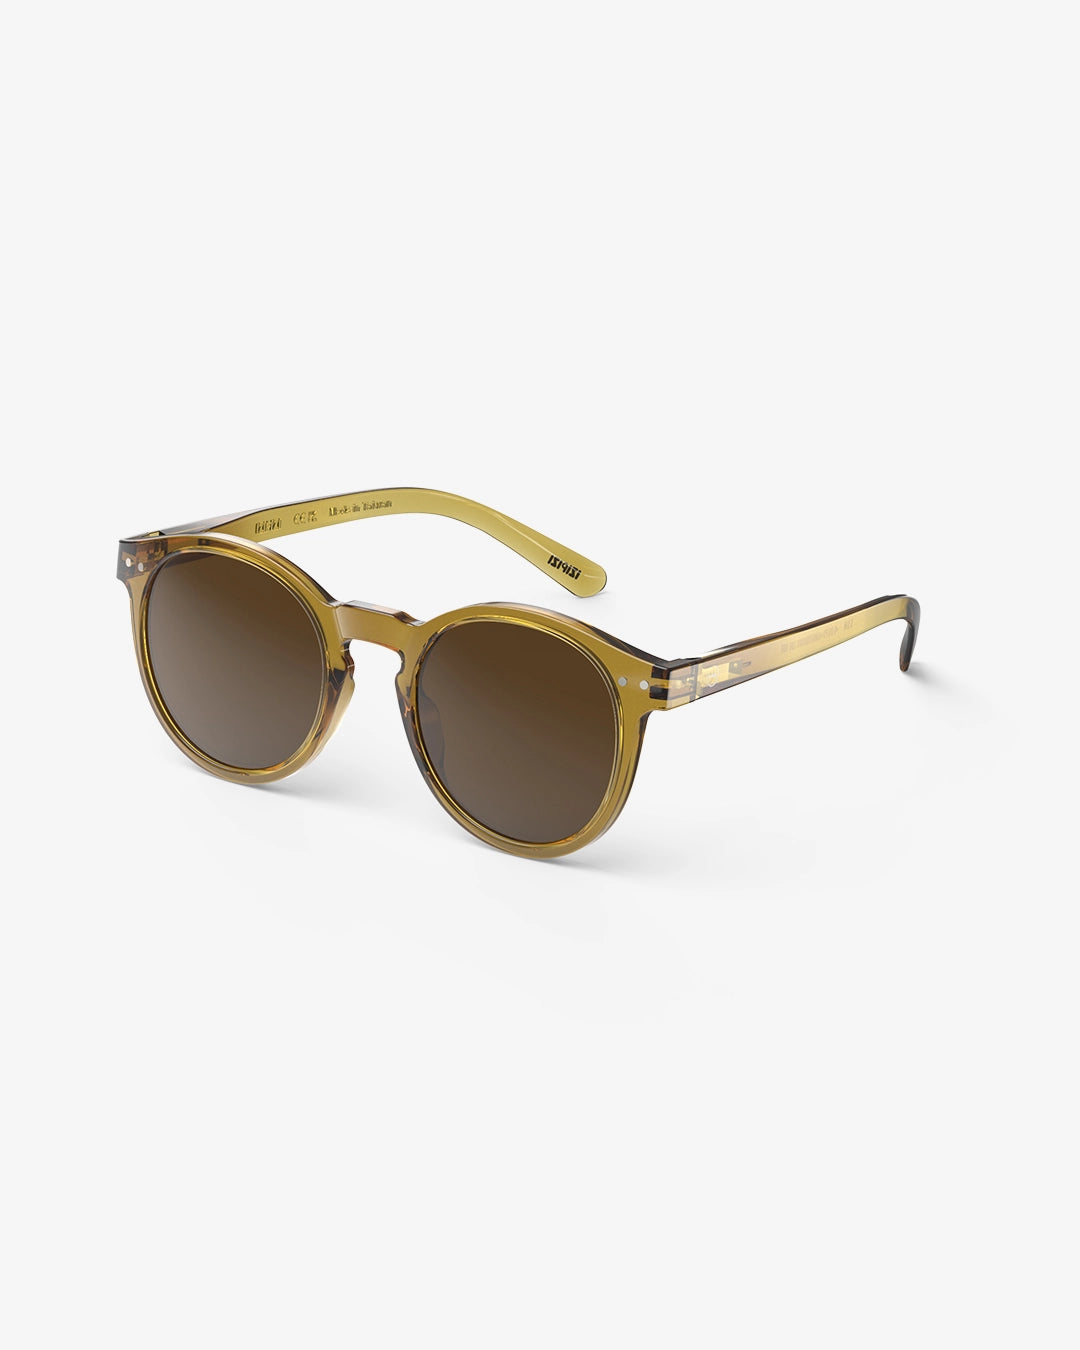 Sunglasses  - #M Golden Green